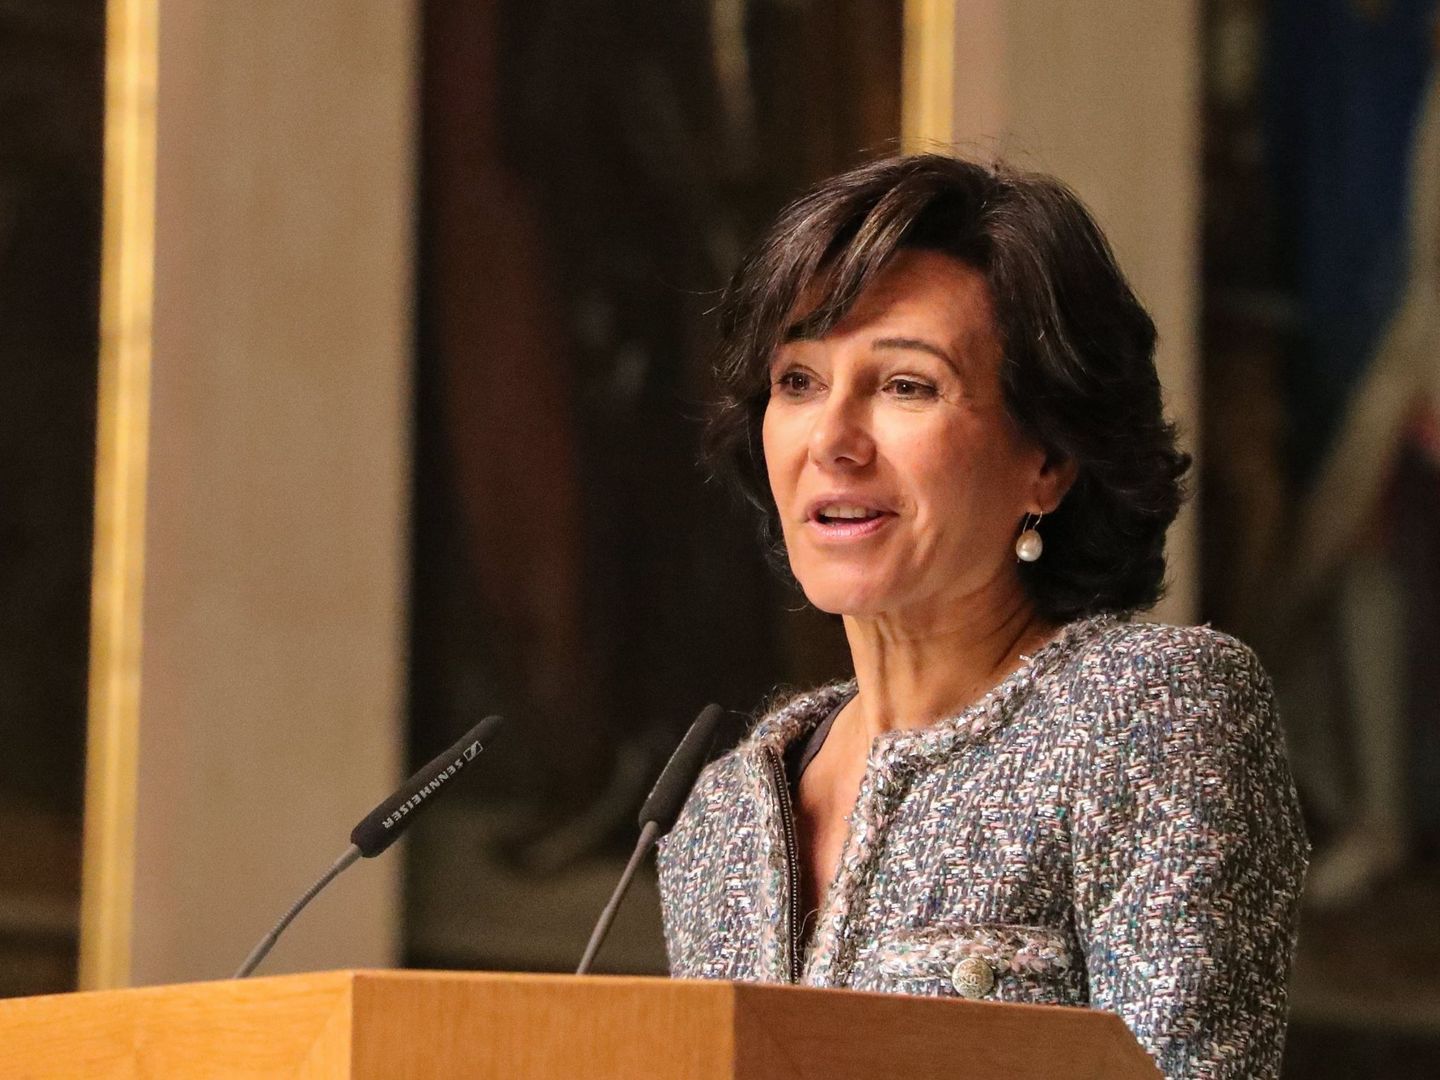 La presidenta del Banco Santander, Ana Botín. (EFE)